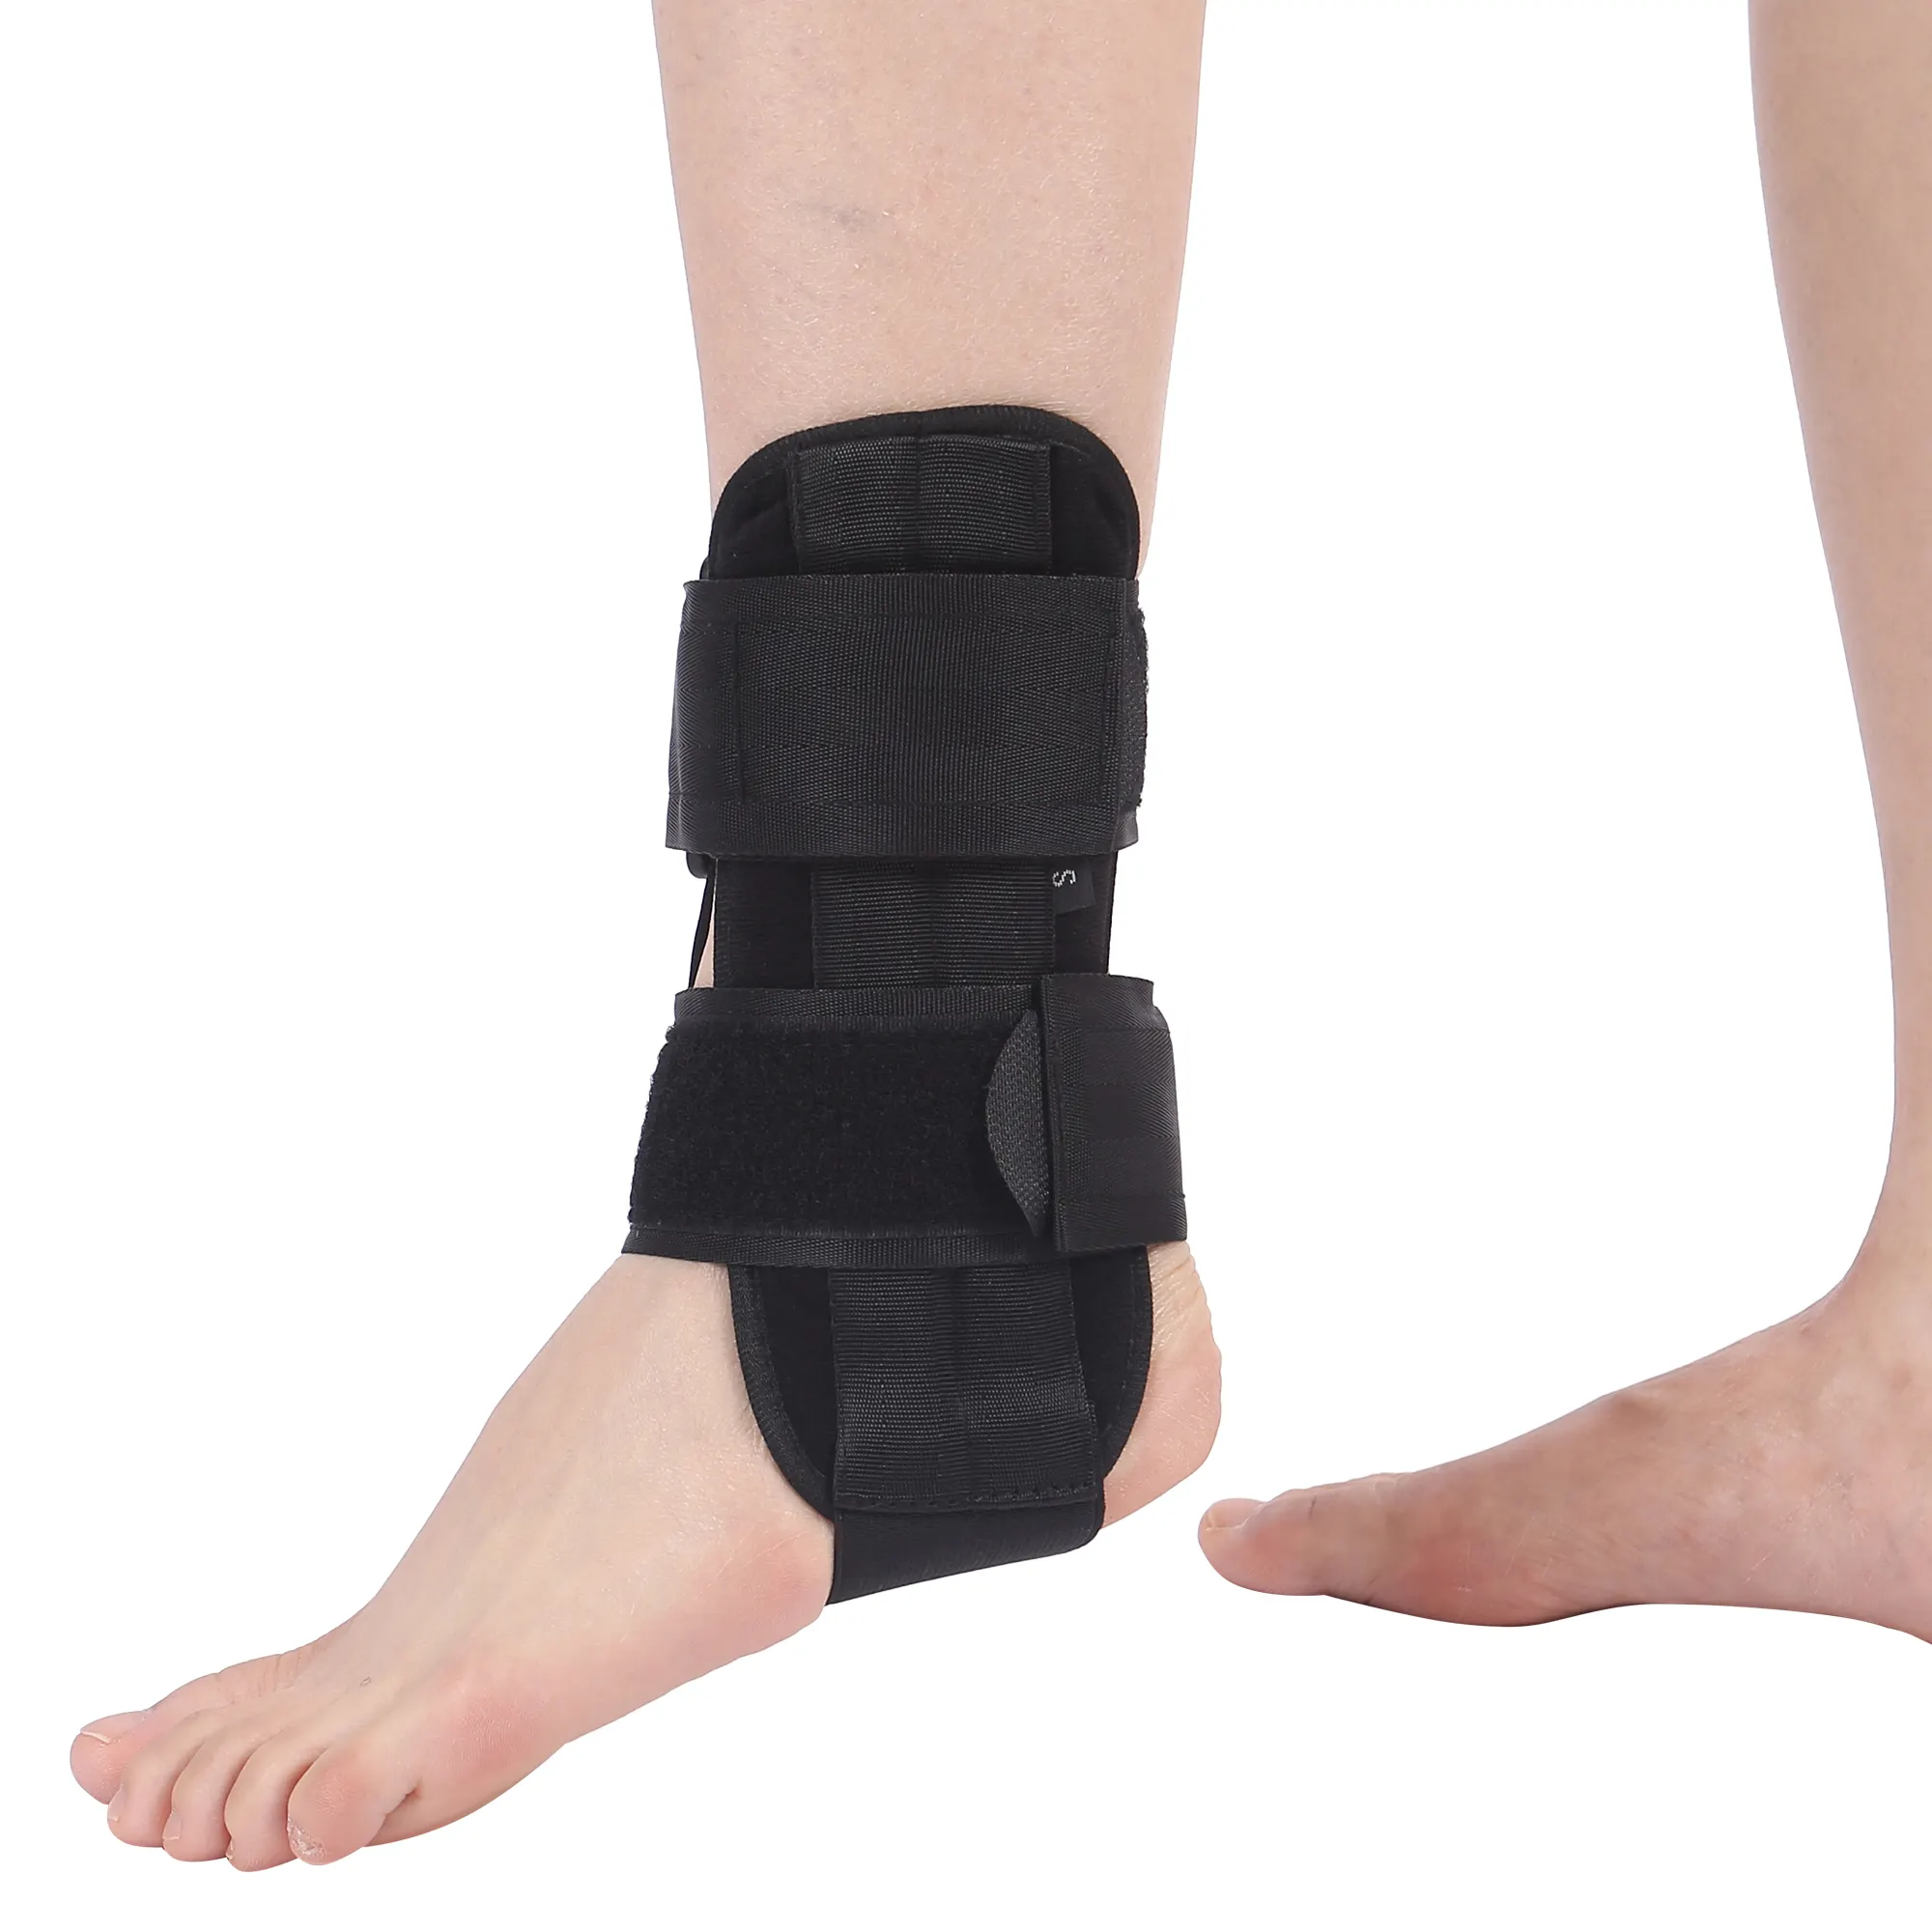 Supporto per la frattura del piede con supporto per la frattura della caviglia morbida regolabile